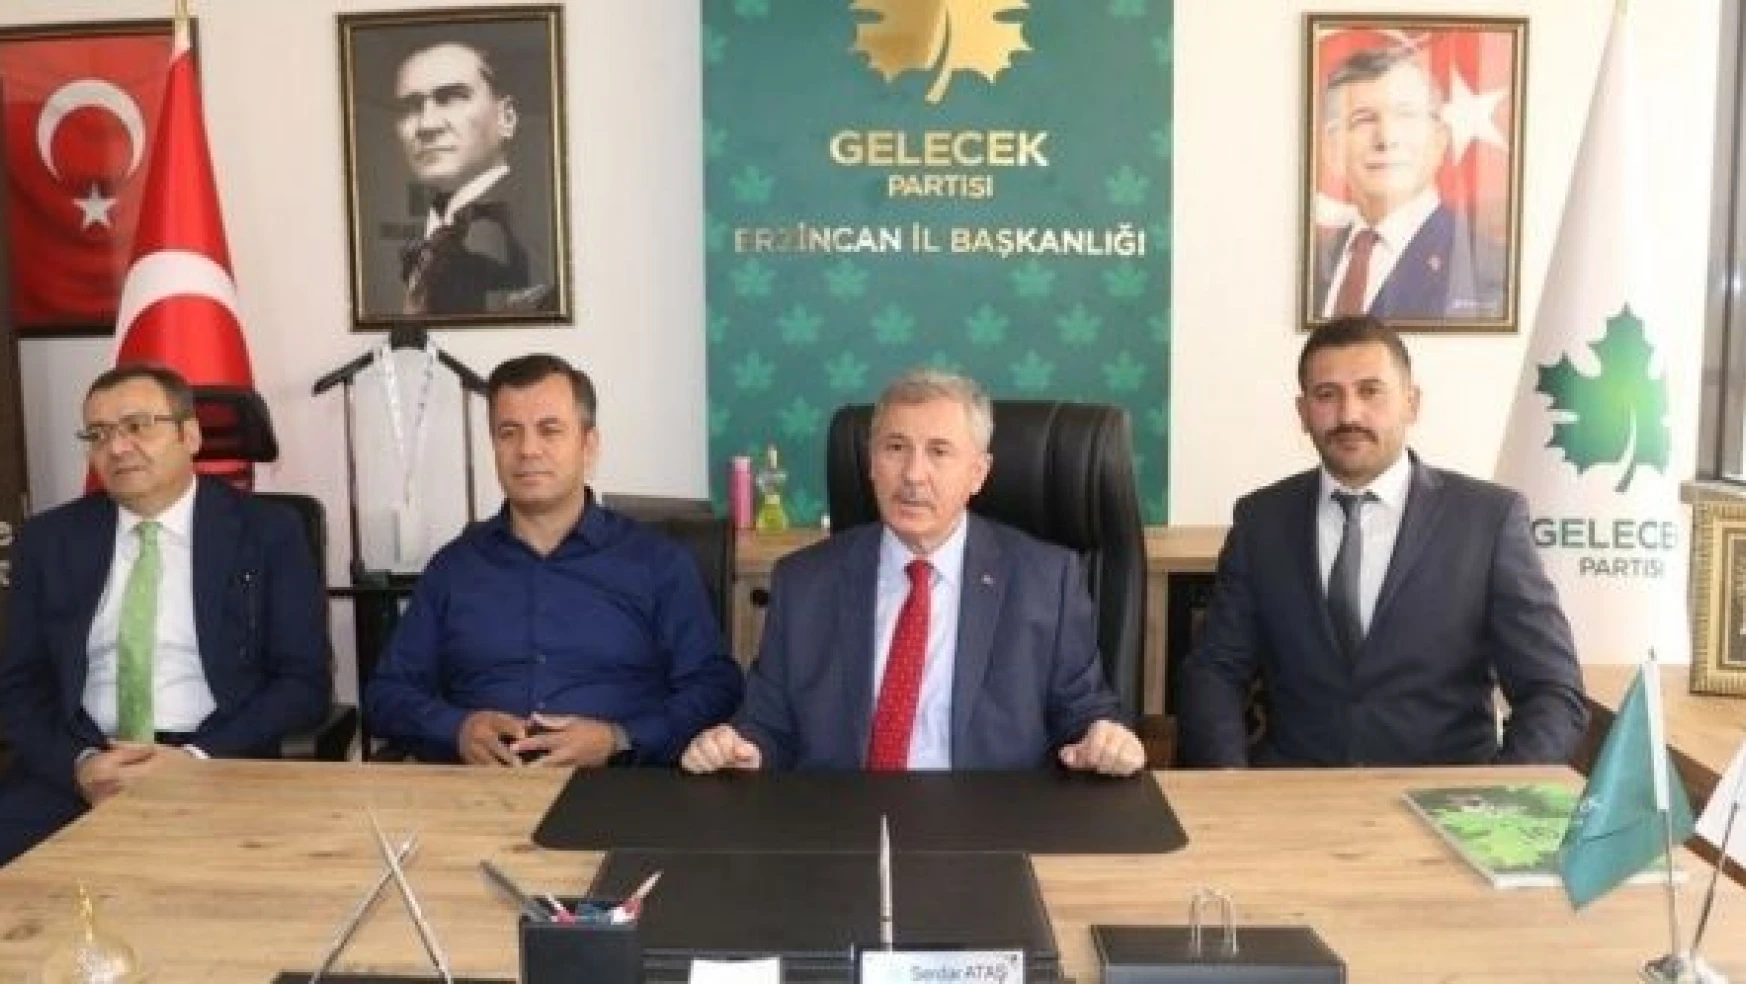 Gelecek Partisi Genel Başkan Yardımcısı Özdağ': "HDP'yi yönetenler, derhal gereğini yapın"